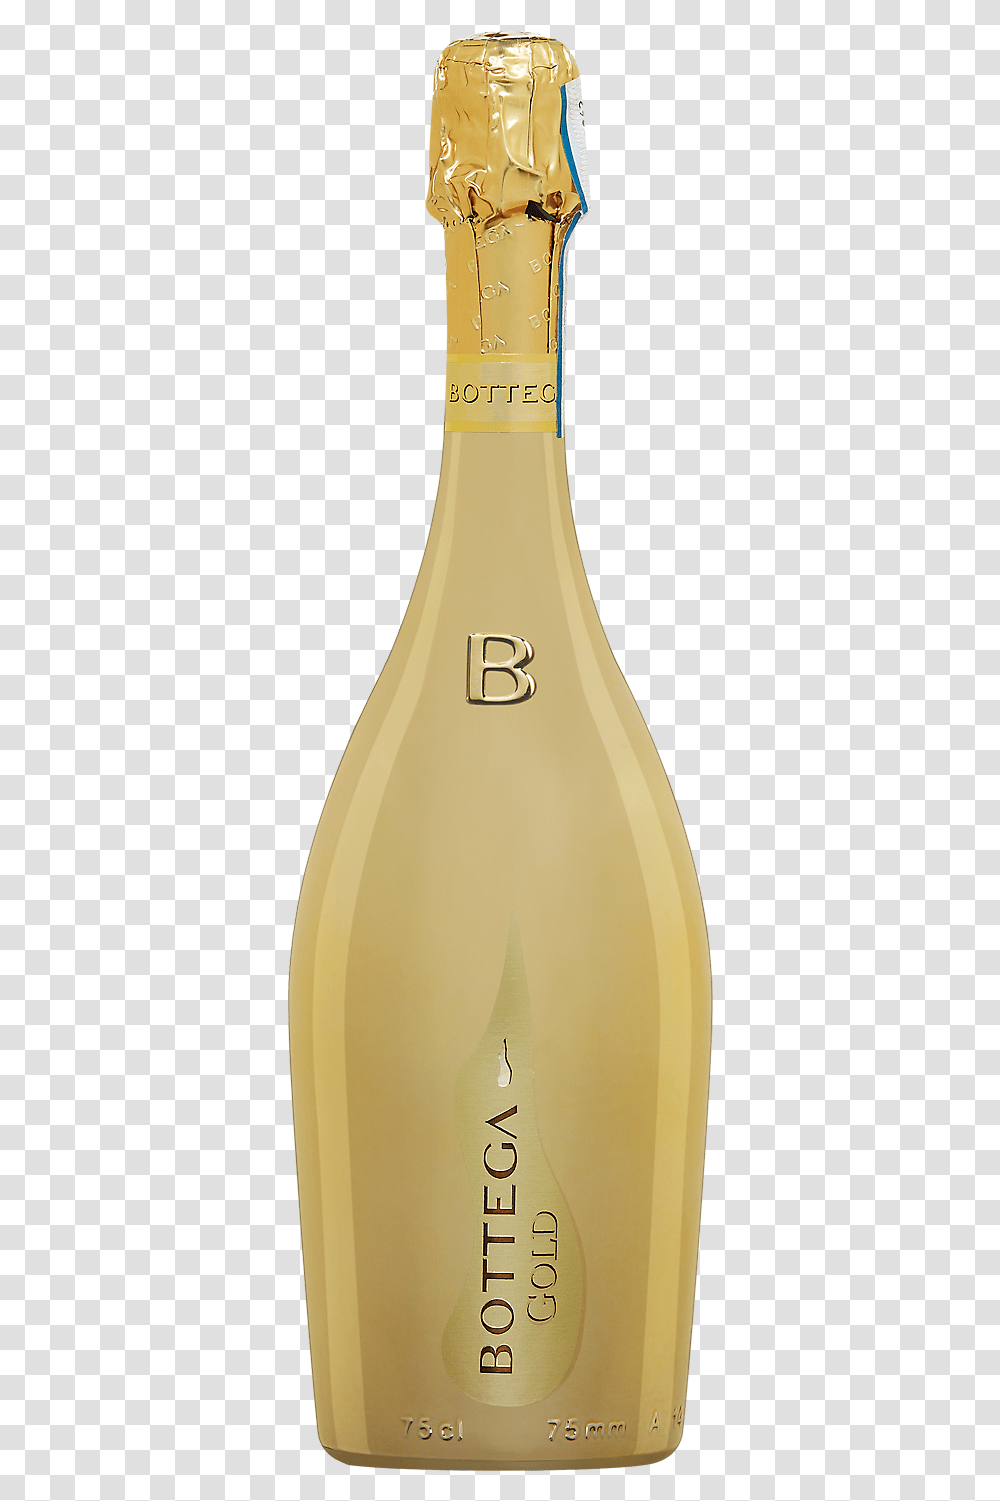 Bottega Gold Prosecco Glass Bottle, Beverage, Drink, Alcohol, Wine Transparent Png